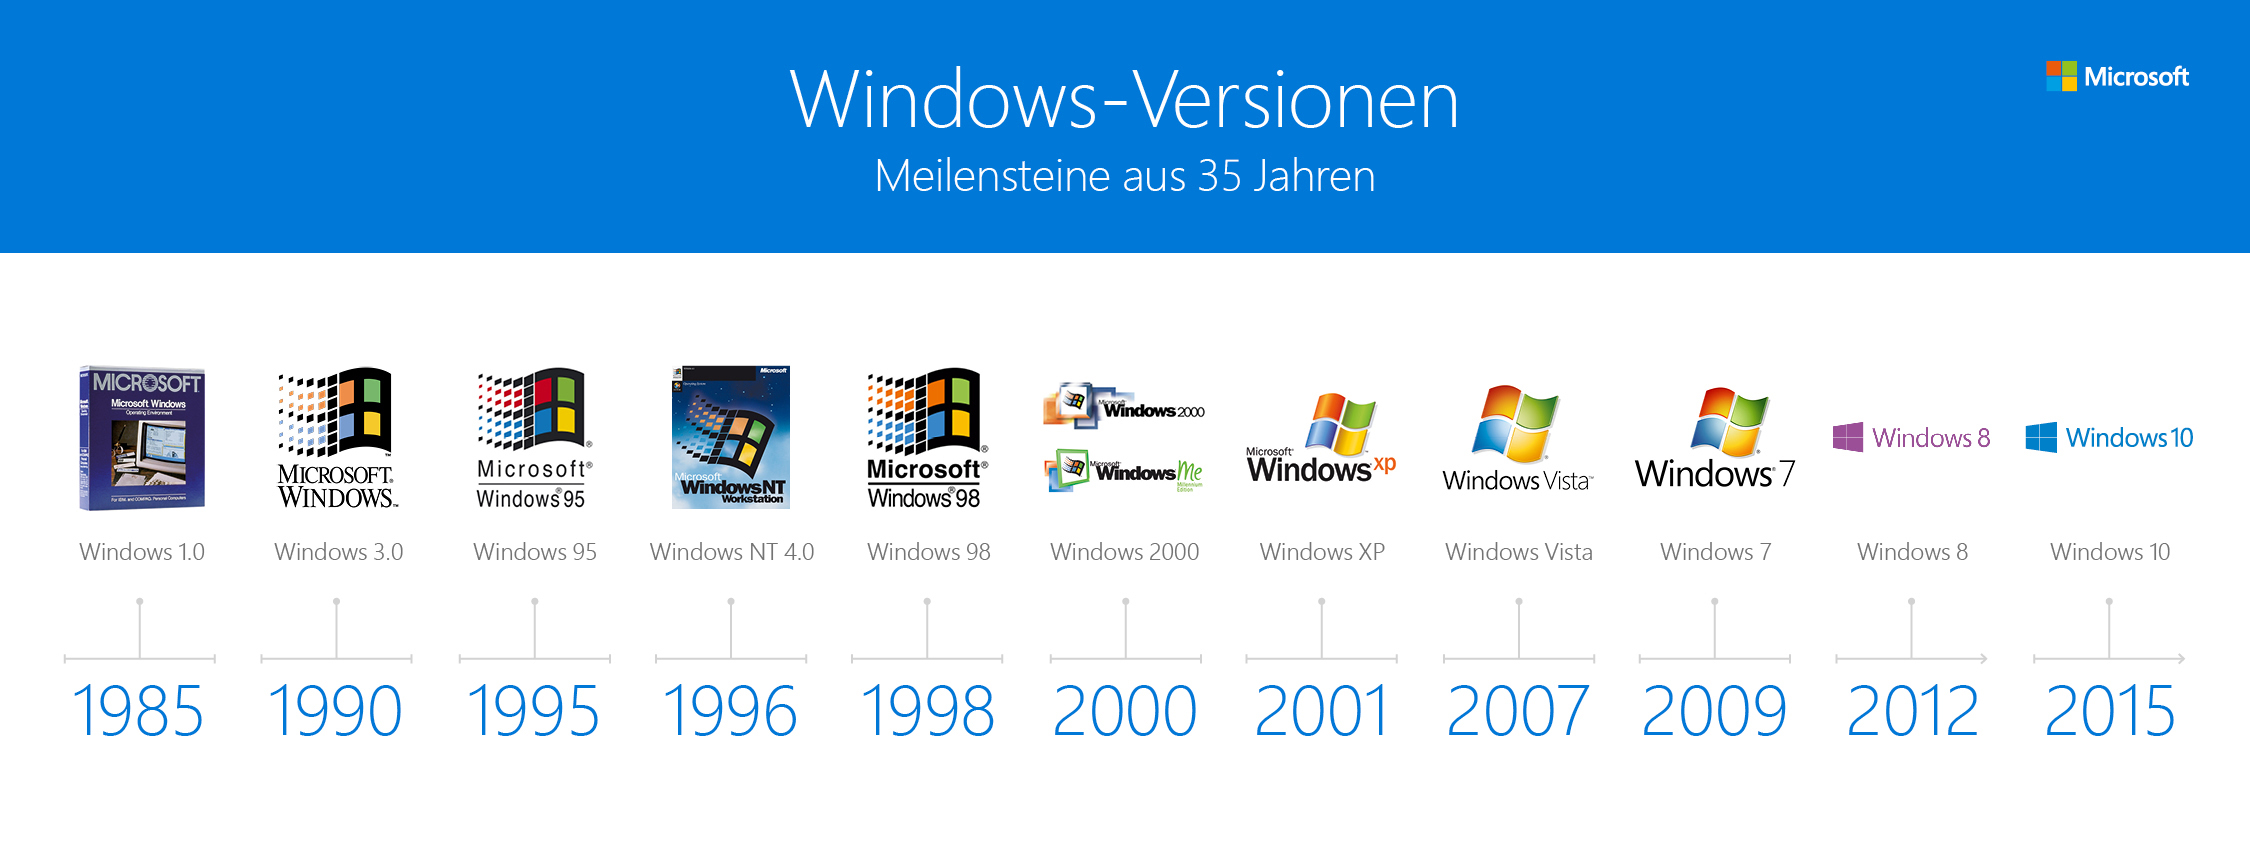 Win list. Версии ОС виндовс. Эволюция ОС Windows. Поколения Windows. Версии виндовс по годам.